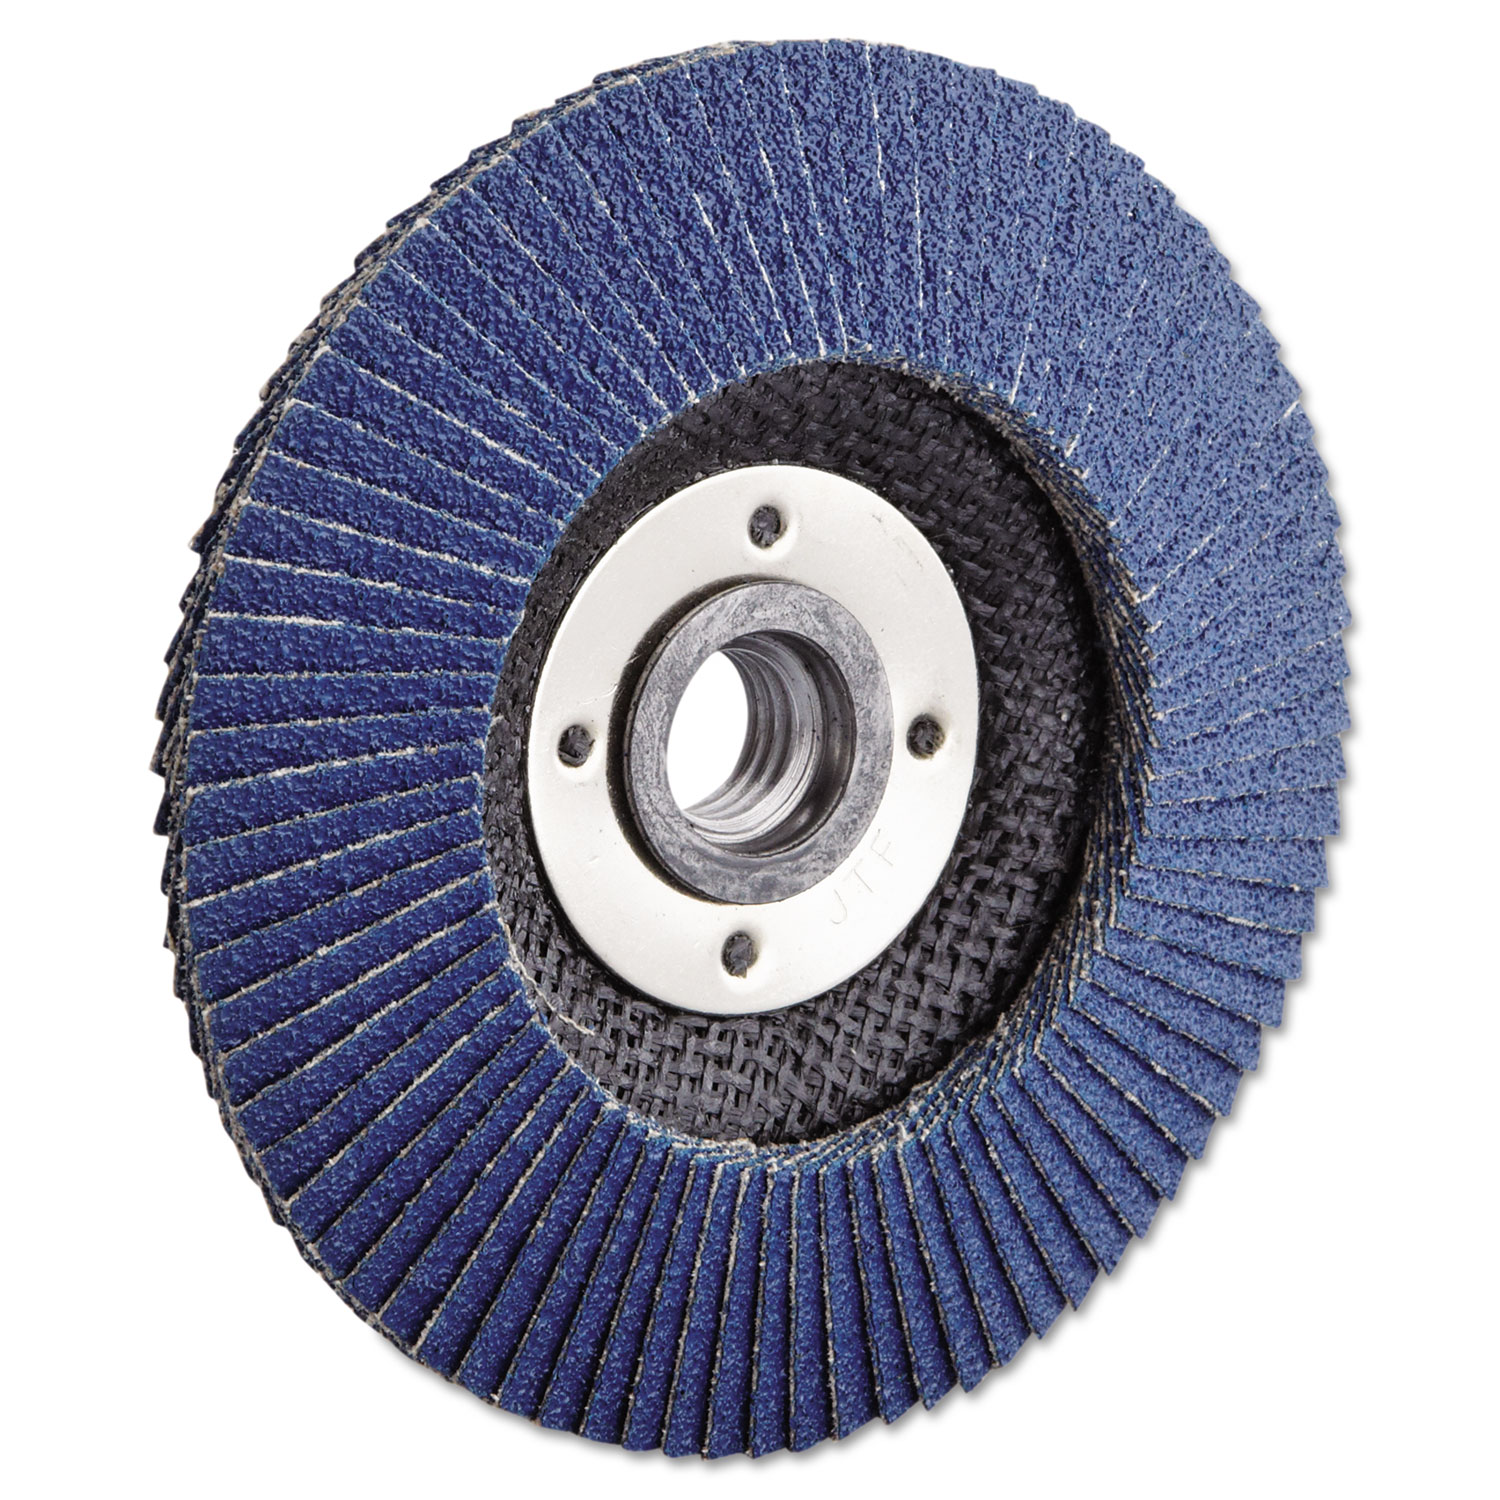 Vortec Pro Abrasive Flap Disc, 4-1/2, 60Z, 5/8-11A.H.